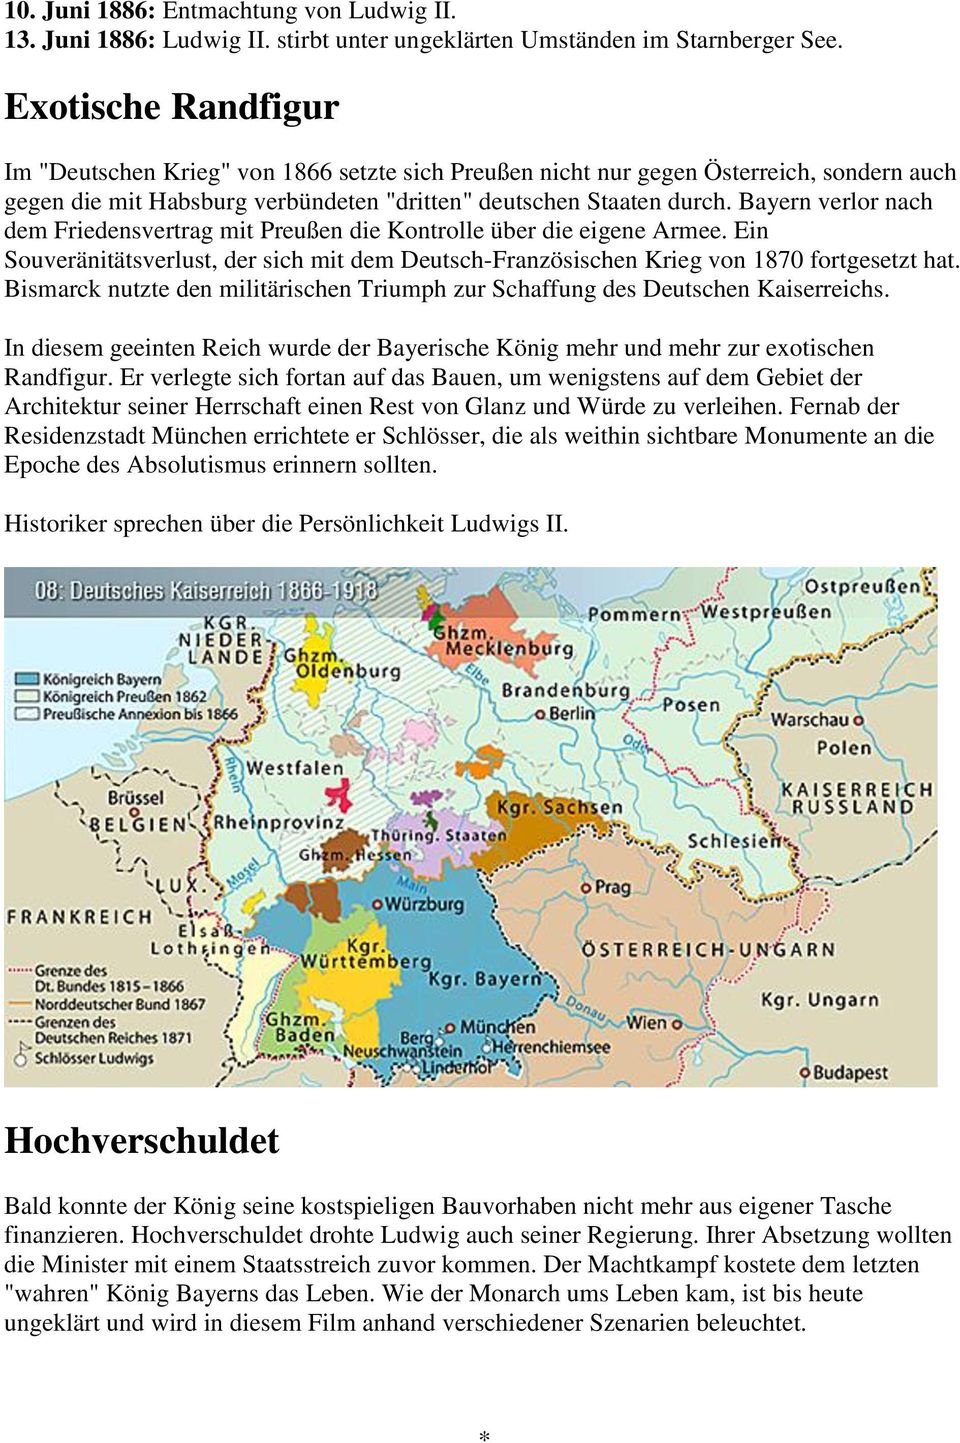 Bayern verlor nach dem Friedensvertrag mit Preußen die Kontrolle über die eigene Armee. Ein Souveränitätsverlust, der sich mit dem Deutsch-Französischen Krieg von 1870 fortgesetzt hat.